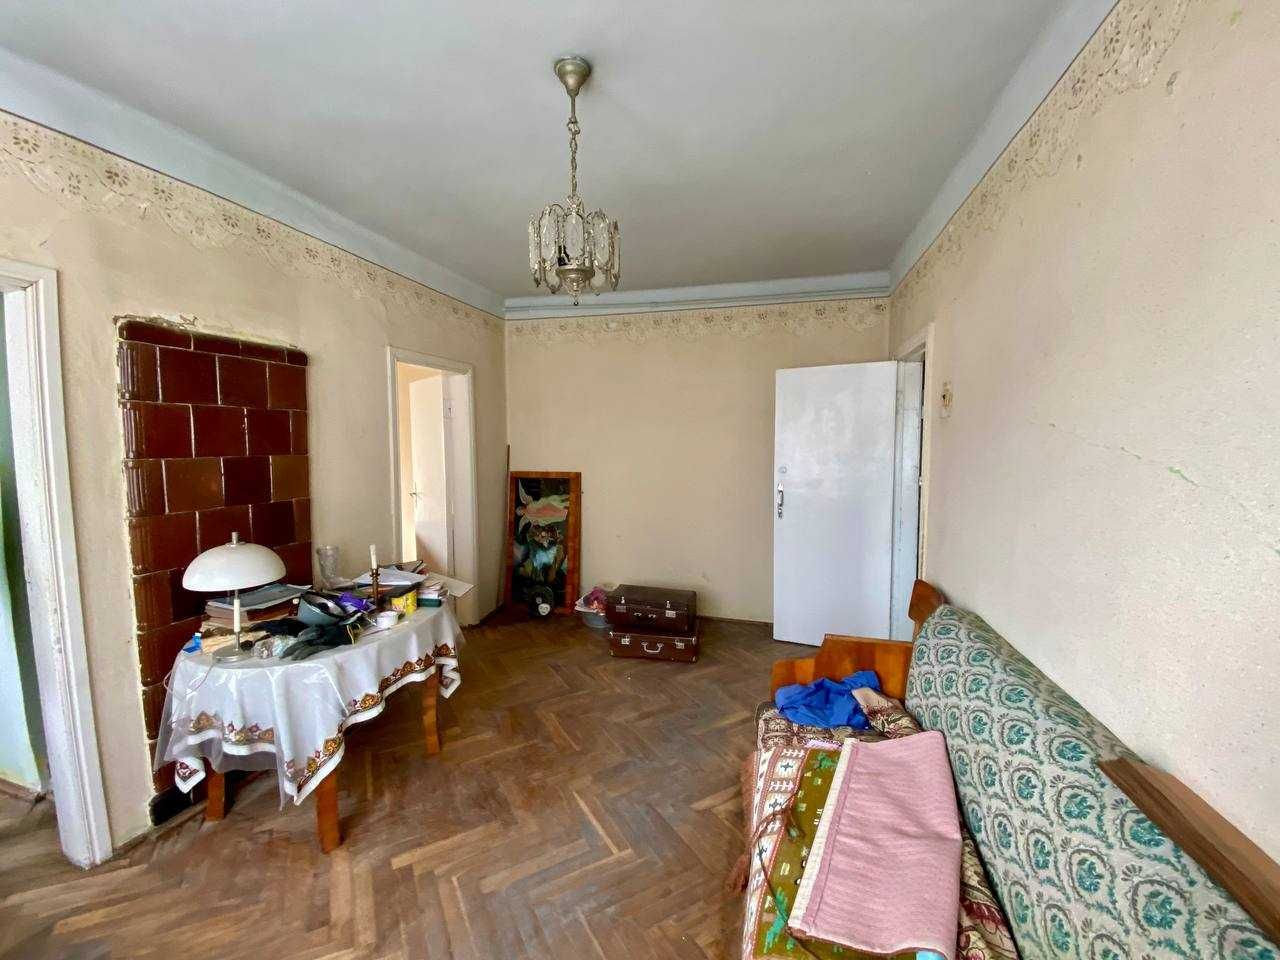 Продається 2-кімнатна квартира в місті Стрий, по вул. Руська